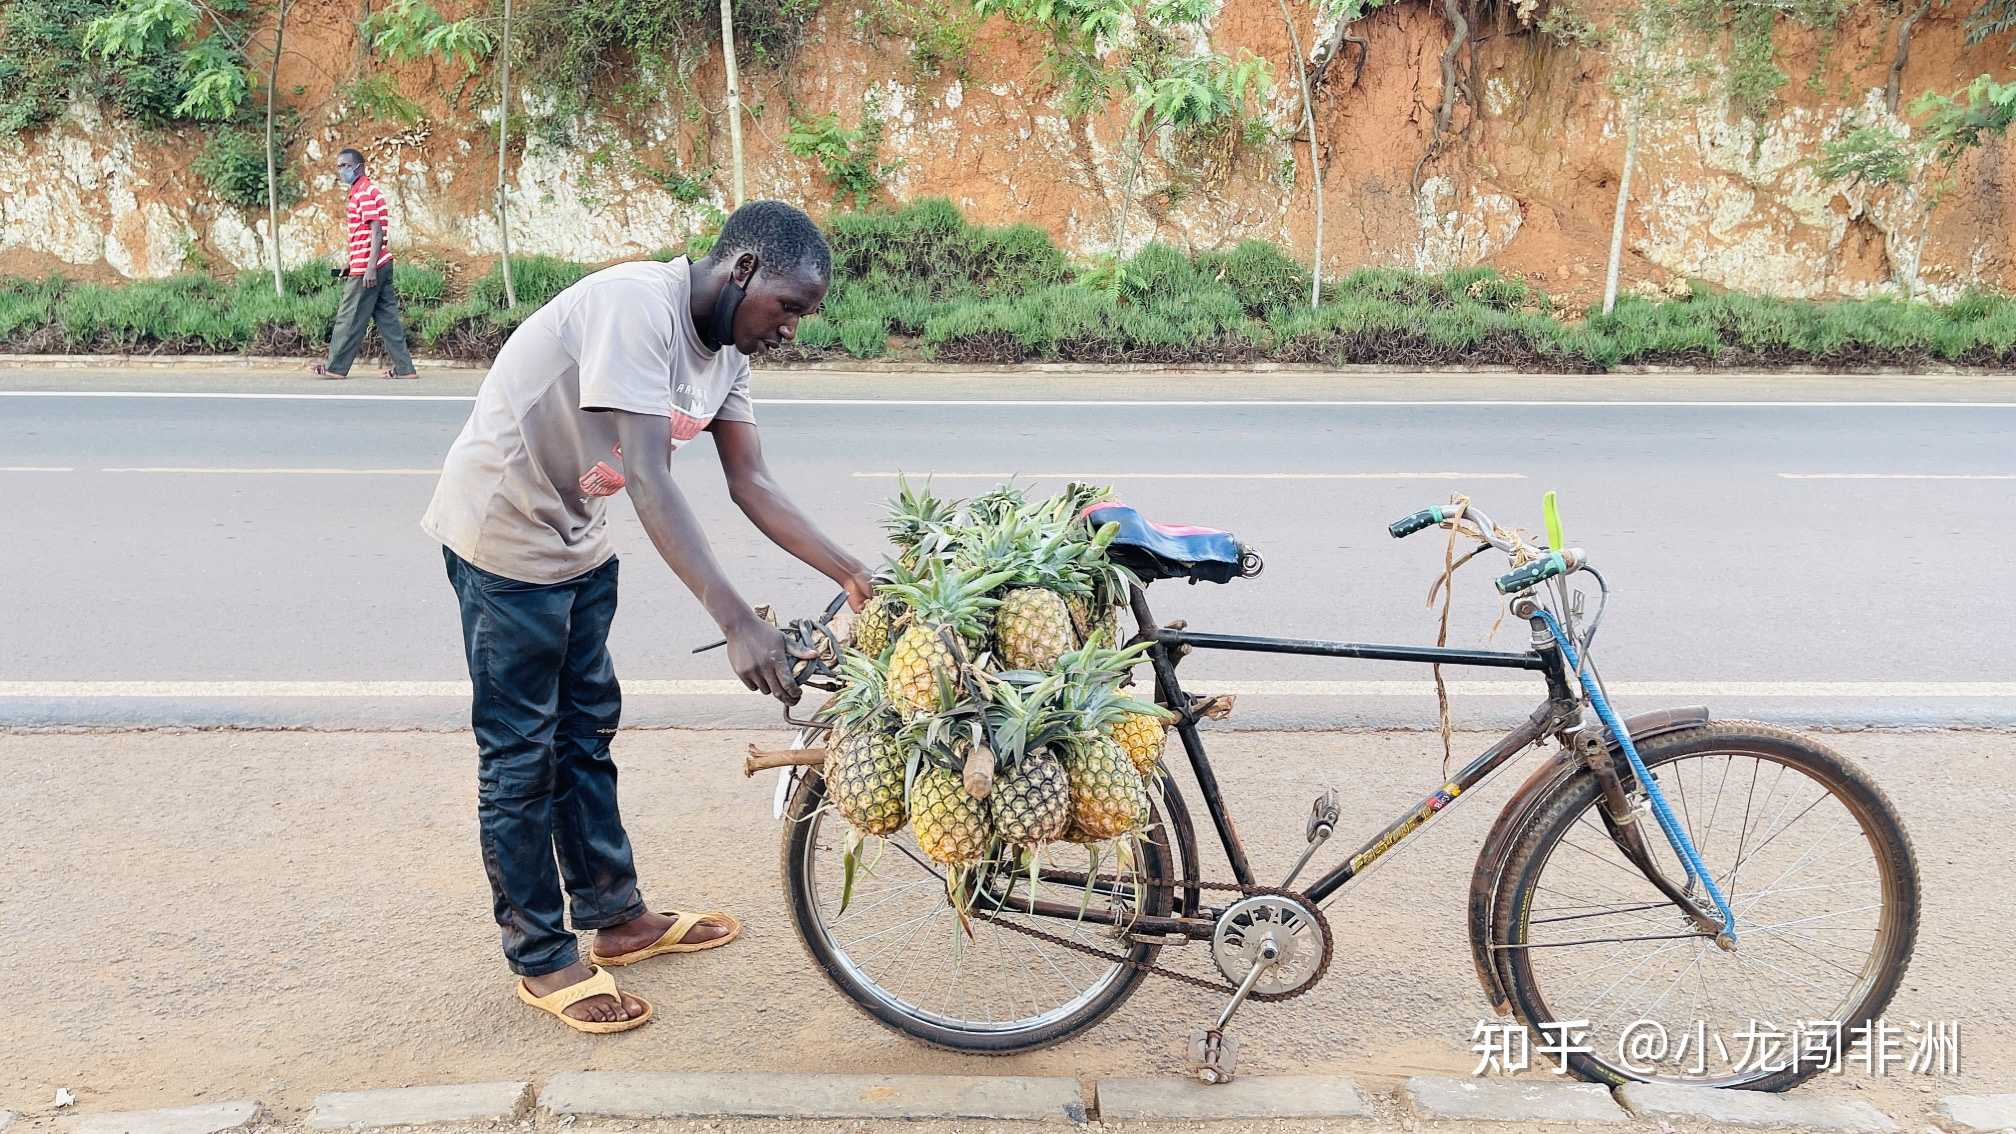 非洲卢旺达二八大杠自行车载人跑出租拉货搞运输真乃国民神车